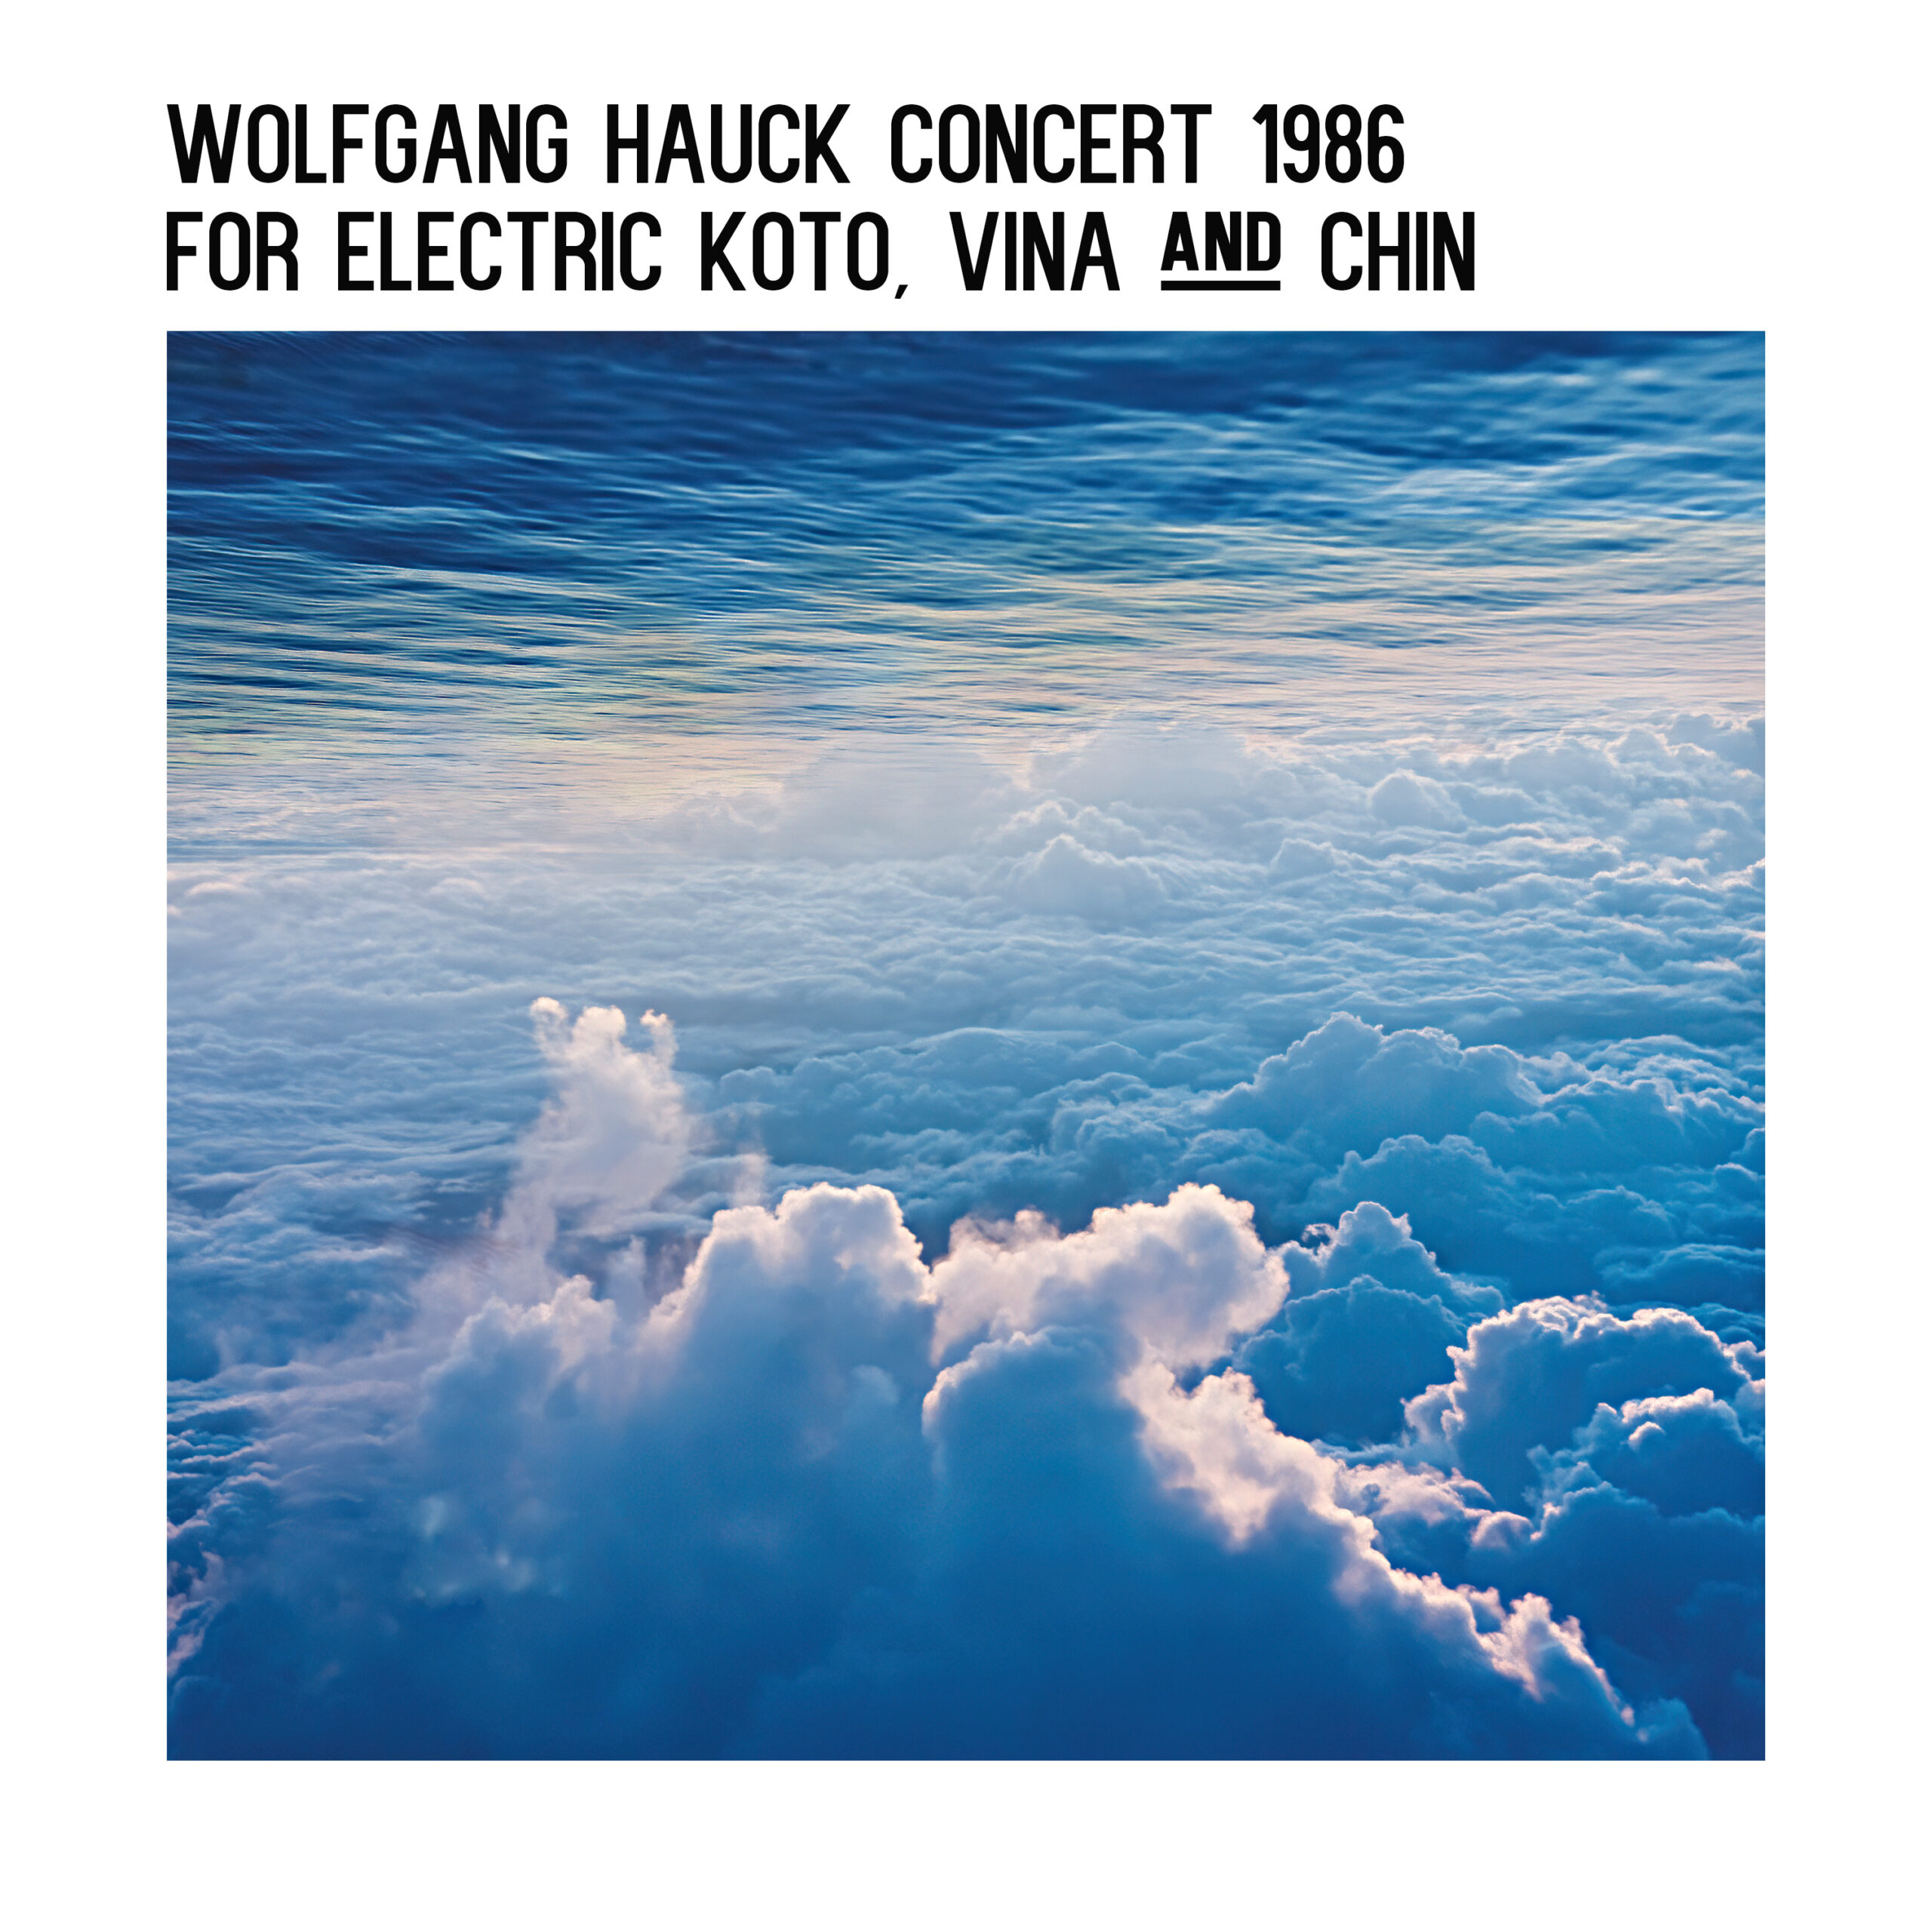 Wolfgang Hauck Concert 1986 